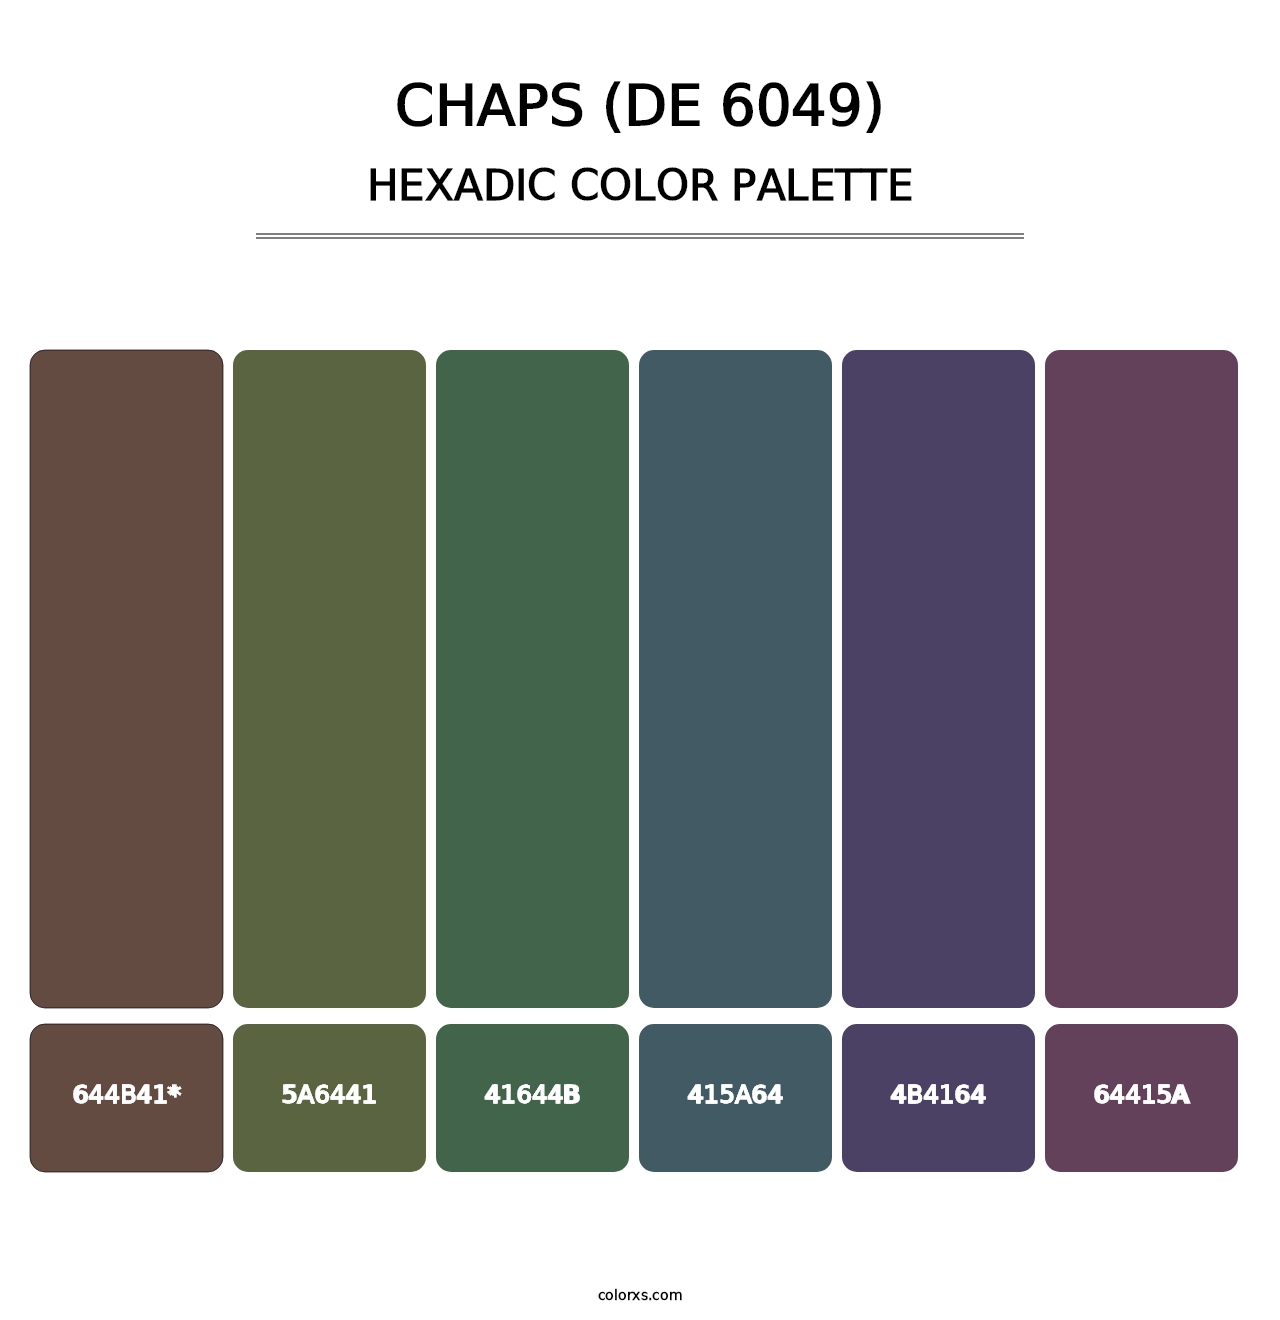 Chaps (DE 6049) - Hexadic Color Palette